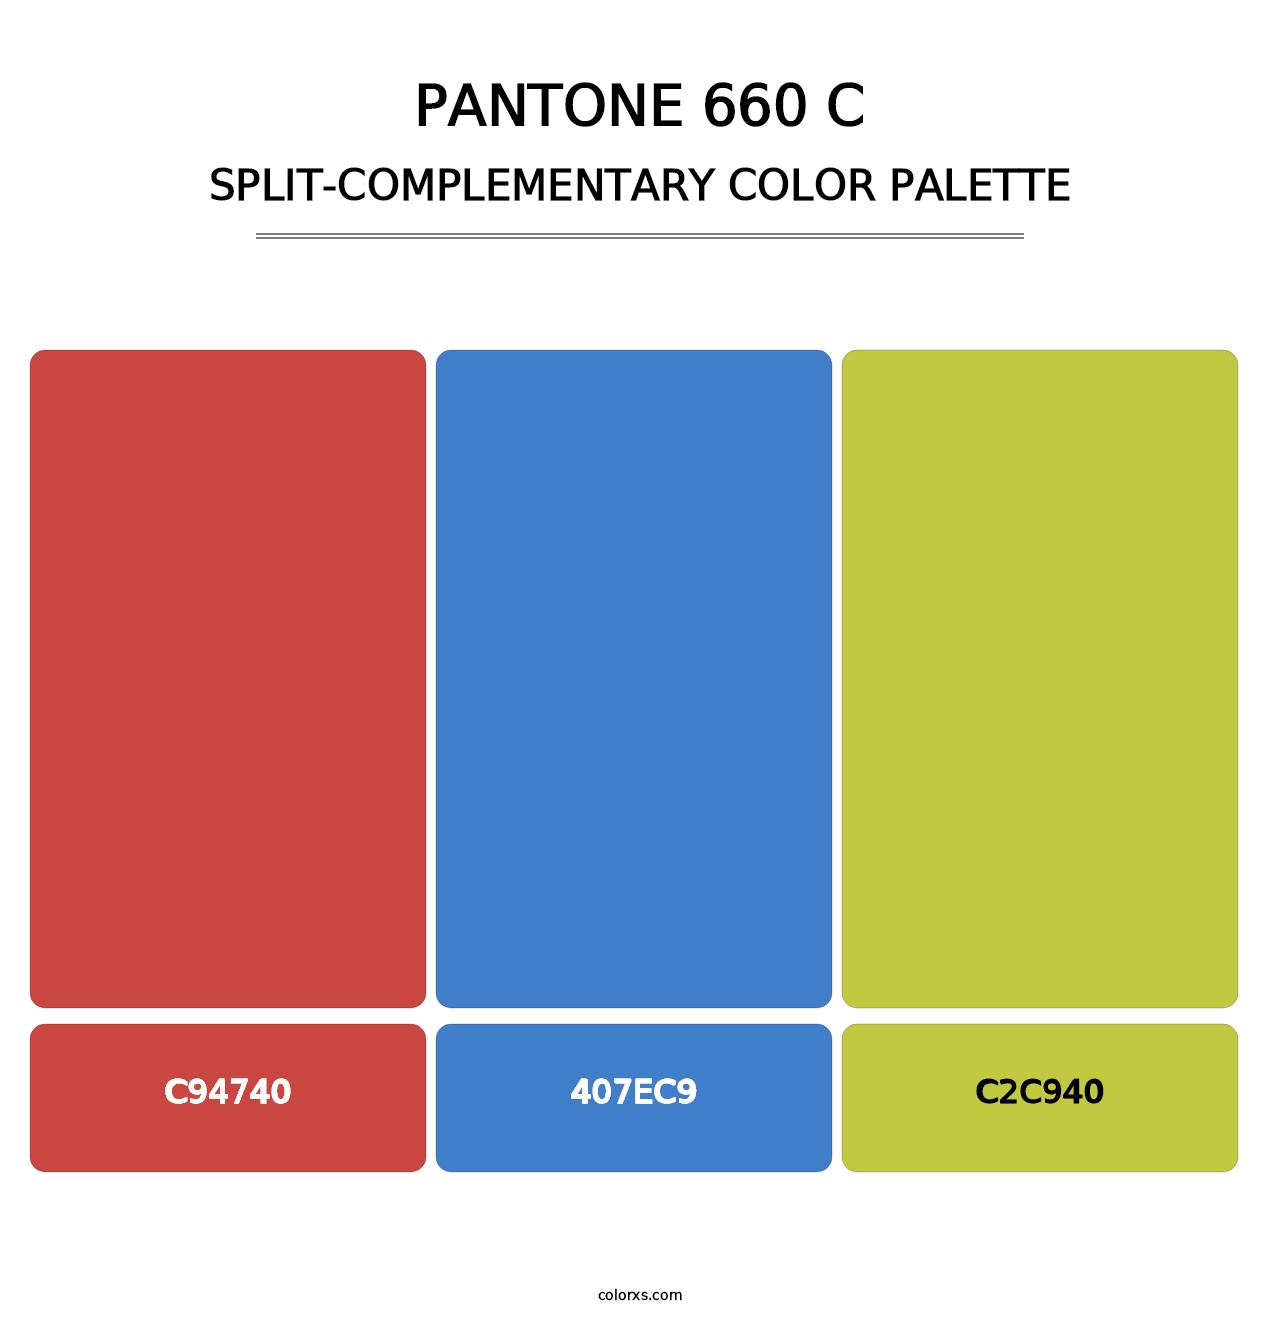 PANTONE 660 C - Split-Complementary Color Palette